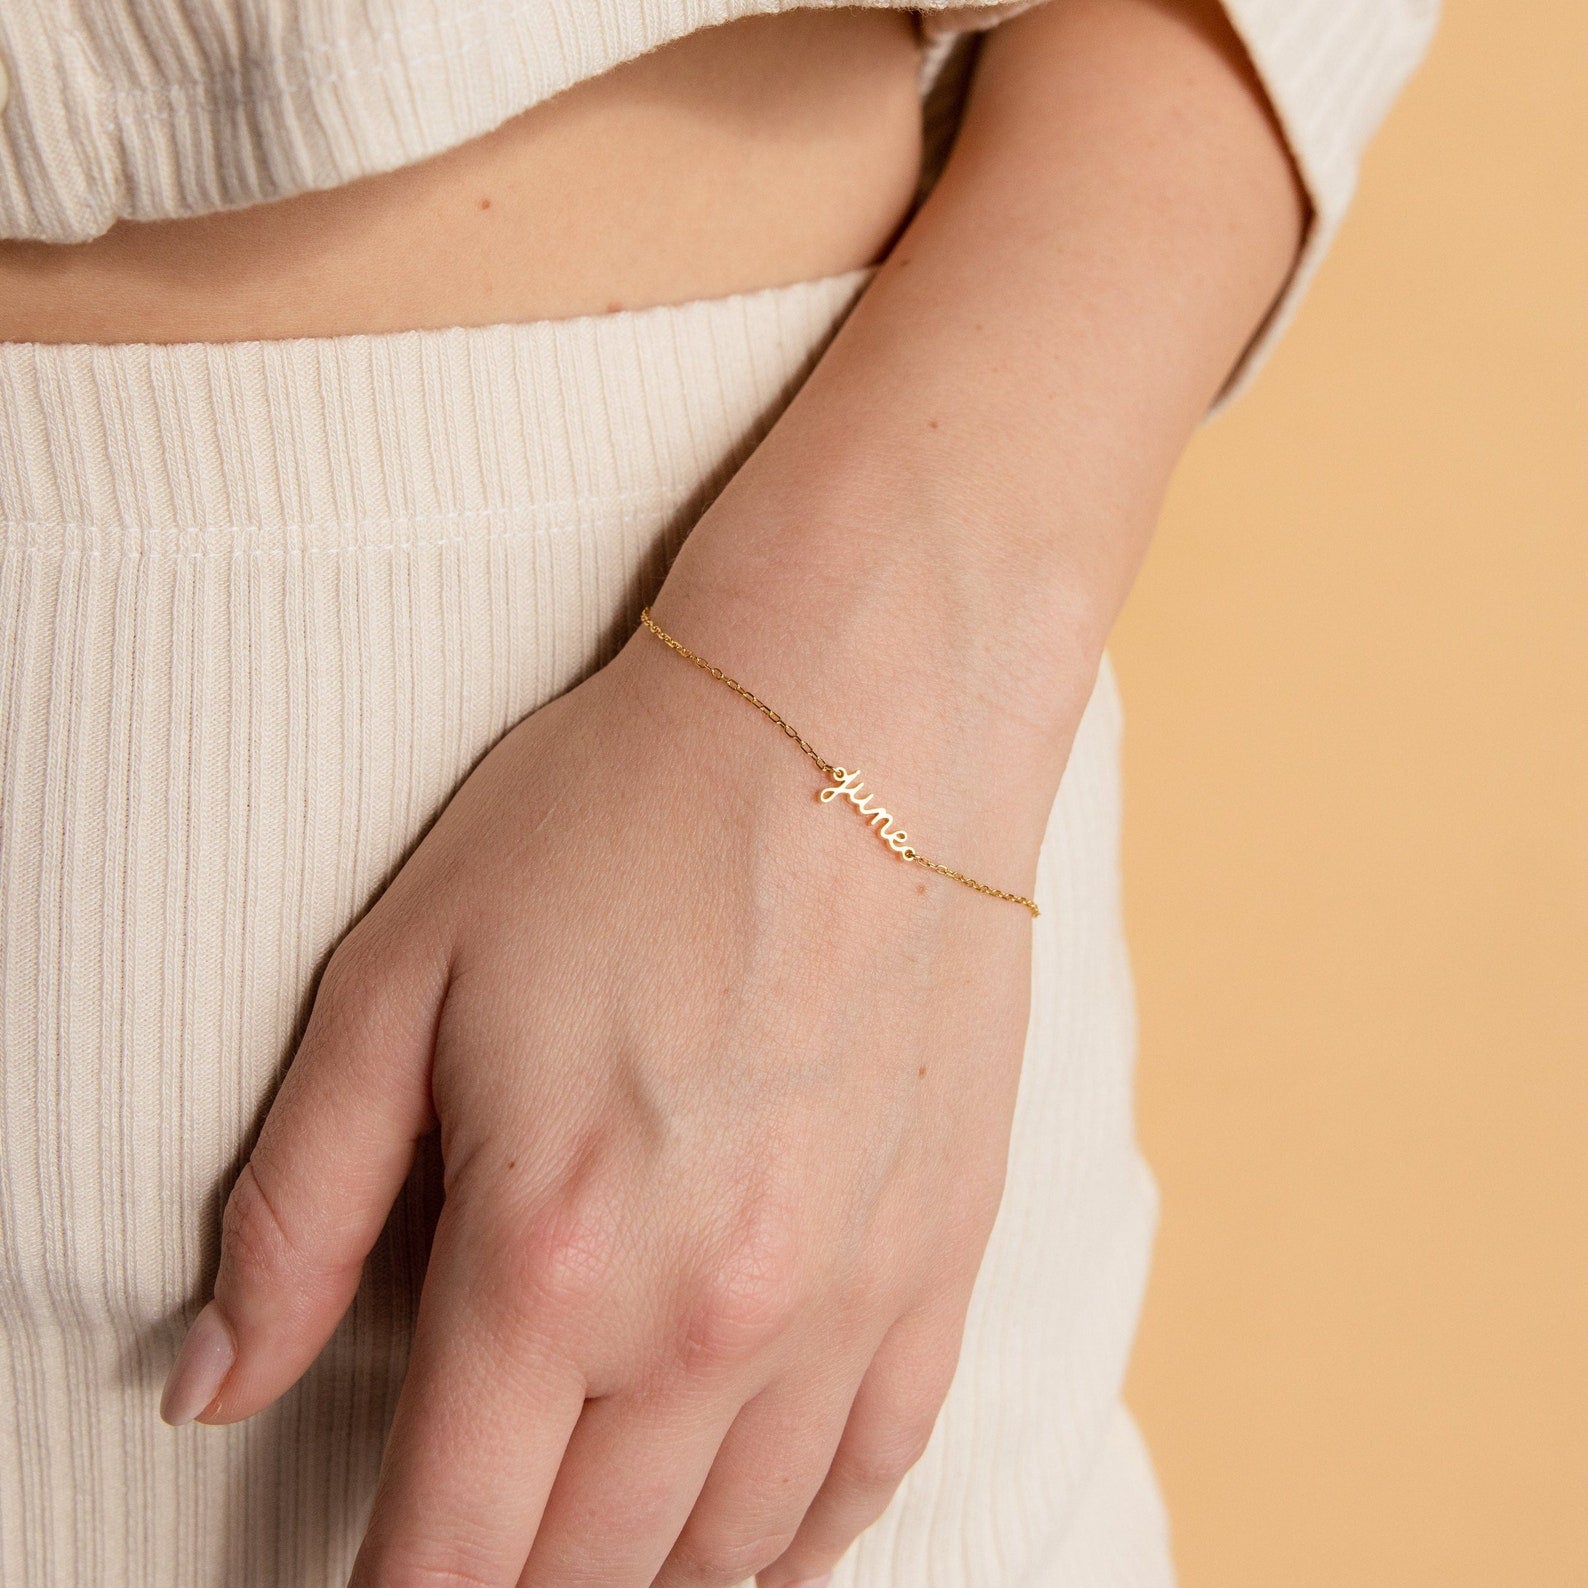 Buy 18K Gold Thin 2mm Bracelet Chain, Minimalist Gold Bracelets for Women  Women's Dainty Gold Chain Bracelet Silver Bracelet Womens Jewelry Online in  India - Etsy